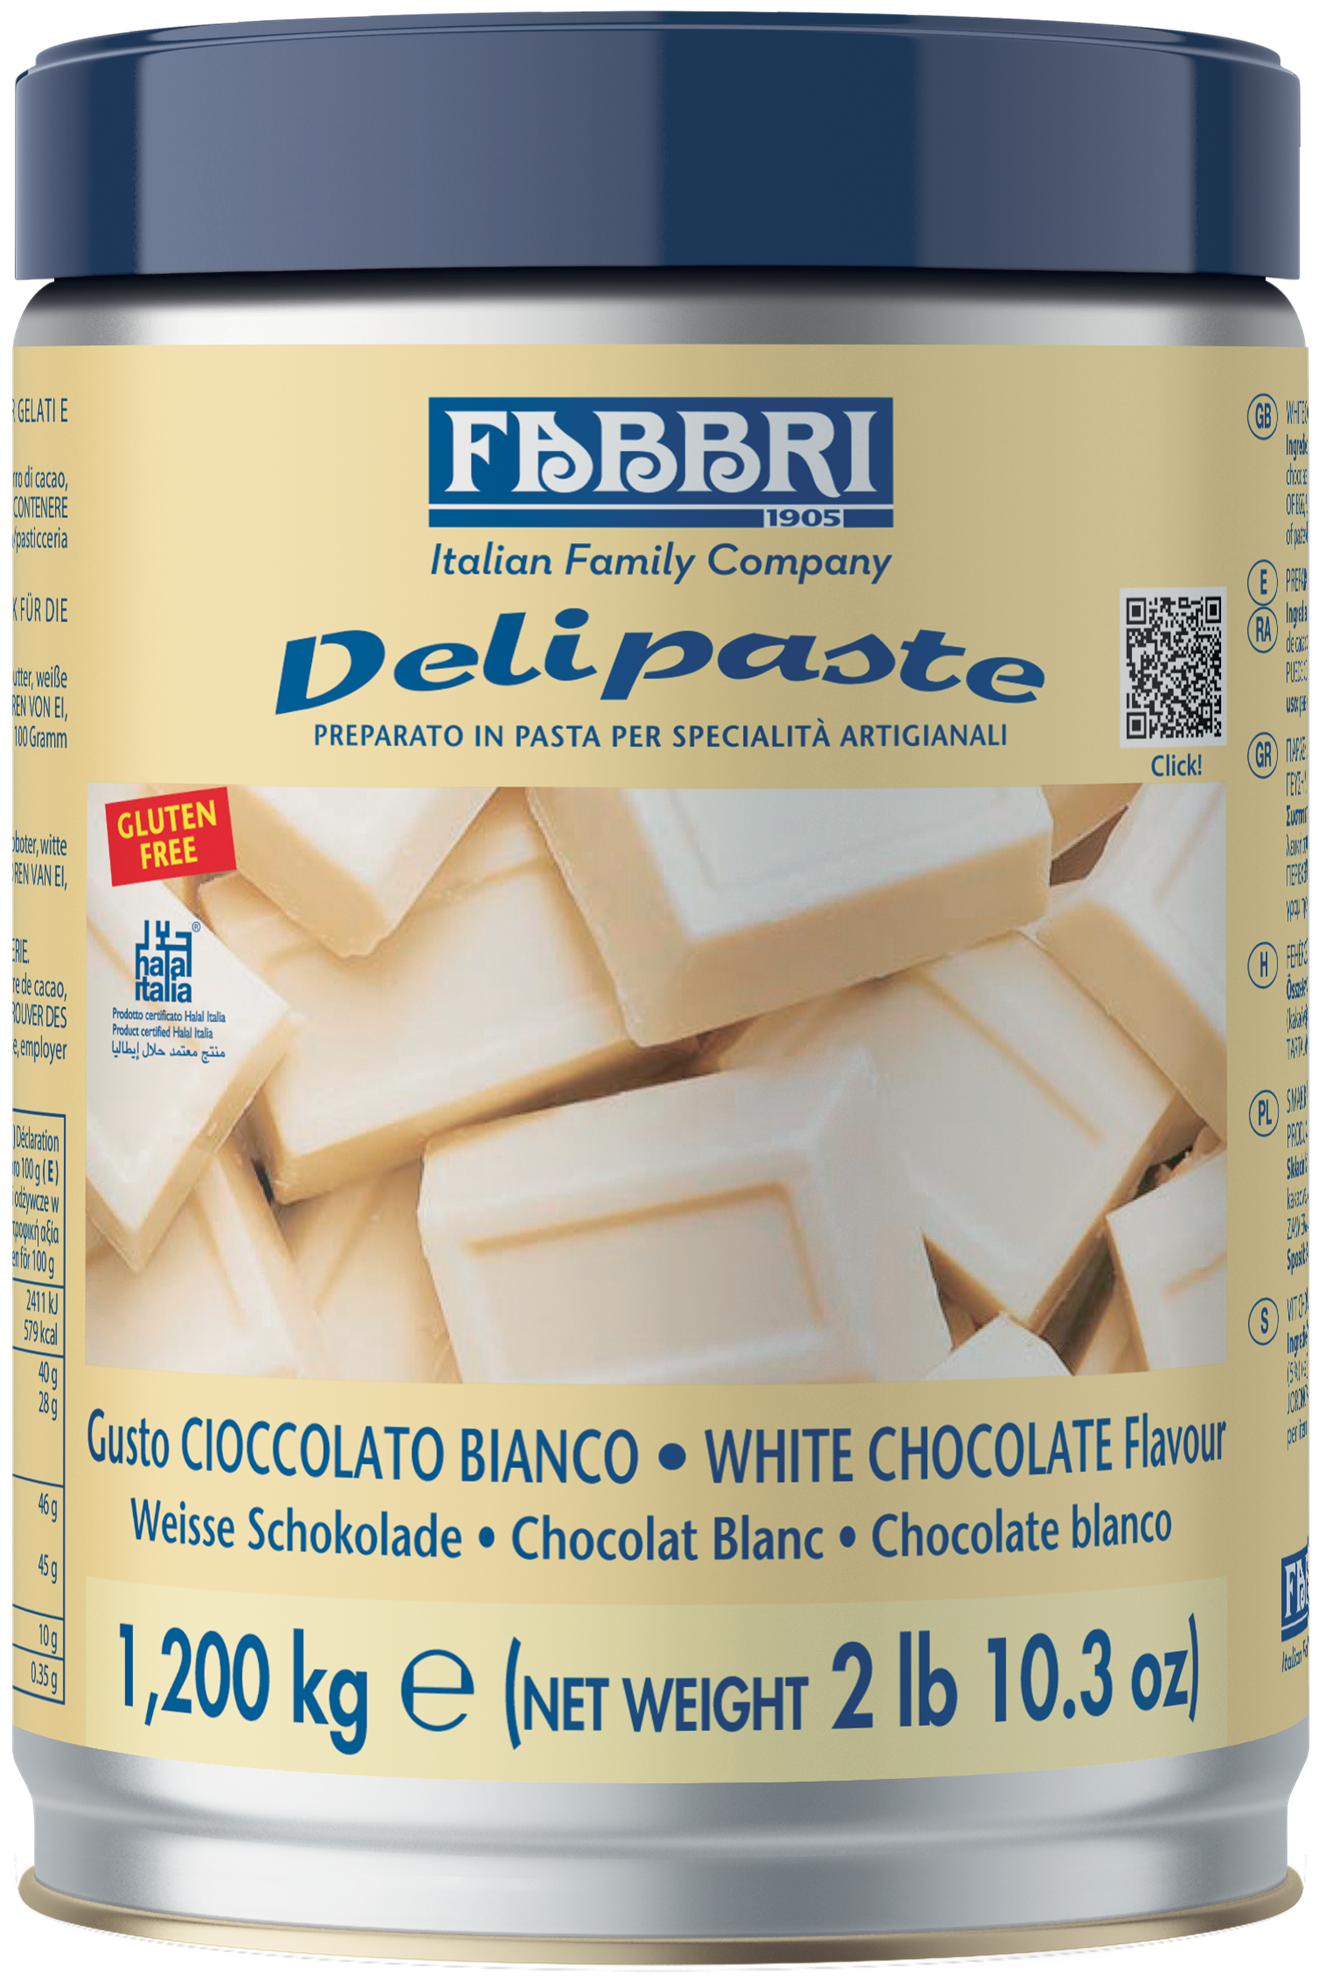 Delipaste Cioccolato Bianco - Fabbri 1905